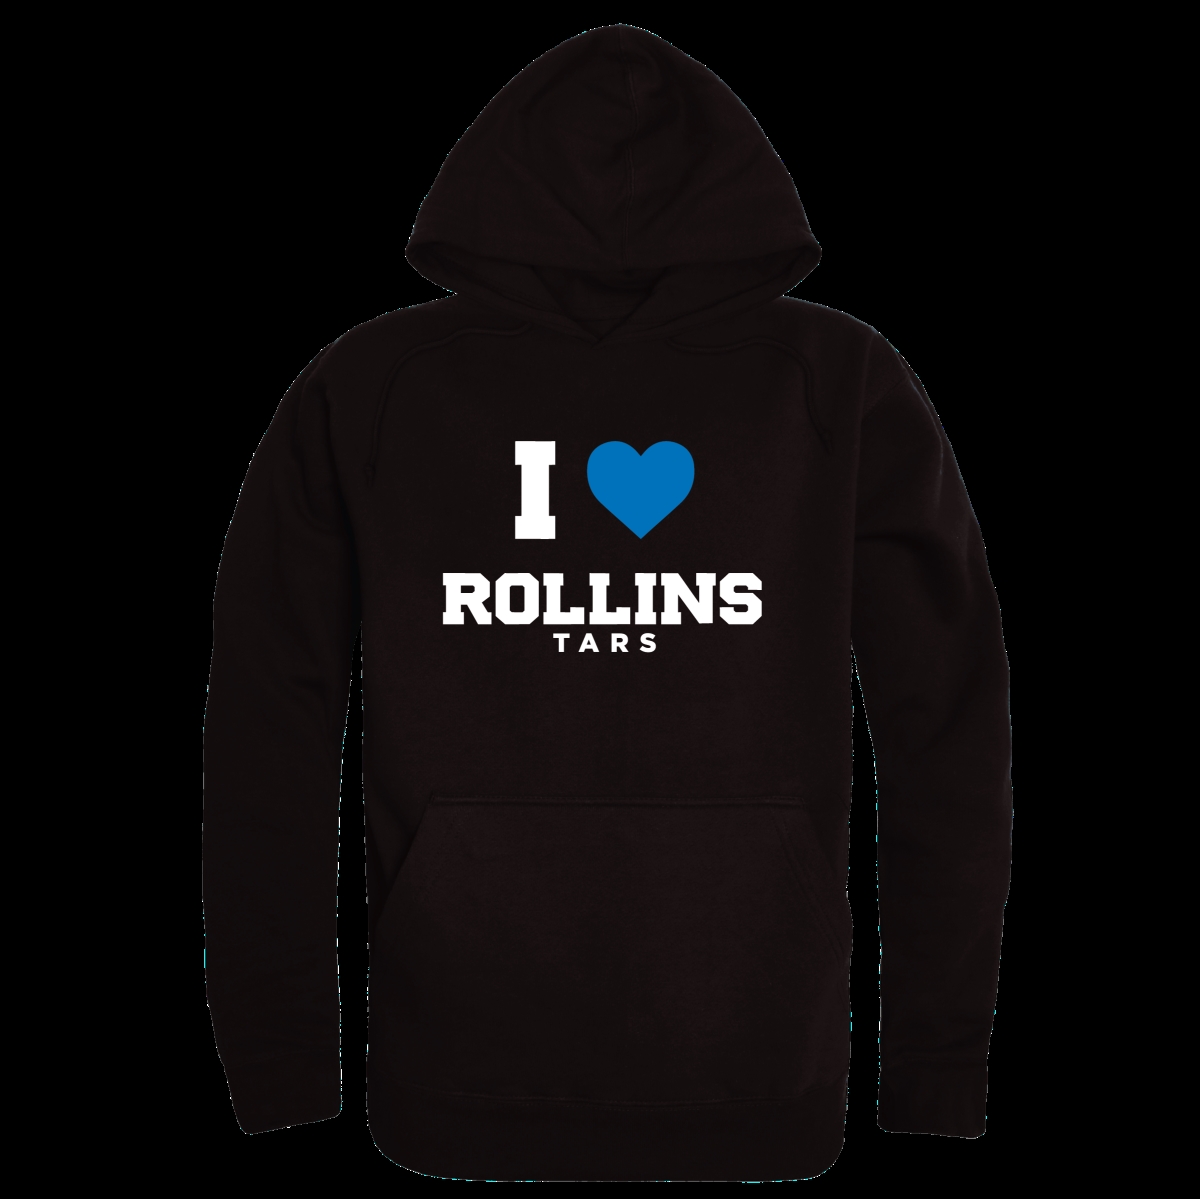 W Republic 553-577-BLK-05 Rollins College Tars I Love Hoodie&#44; Black - 2XL